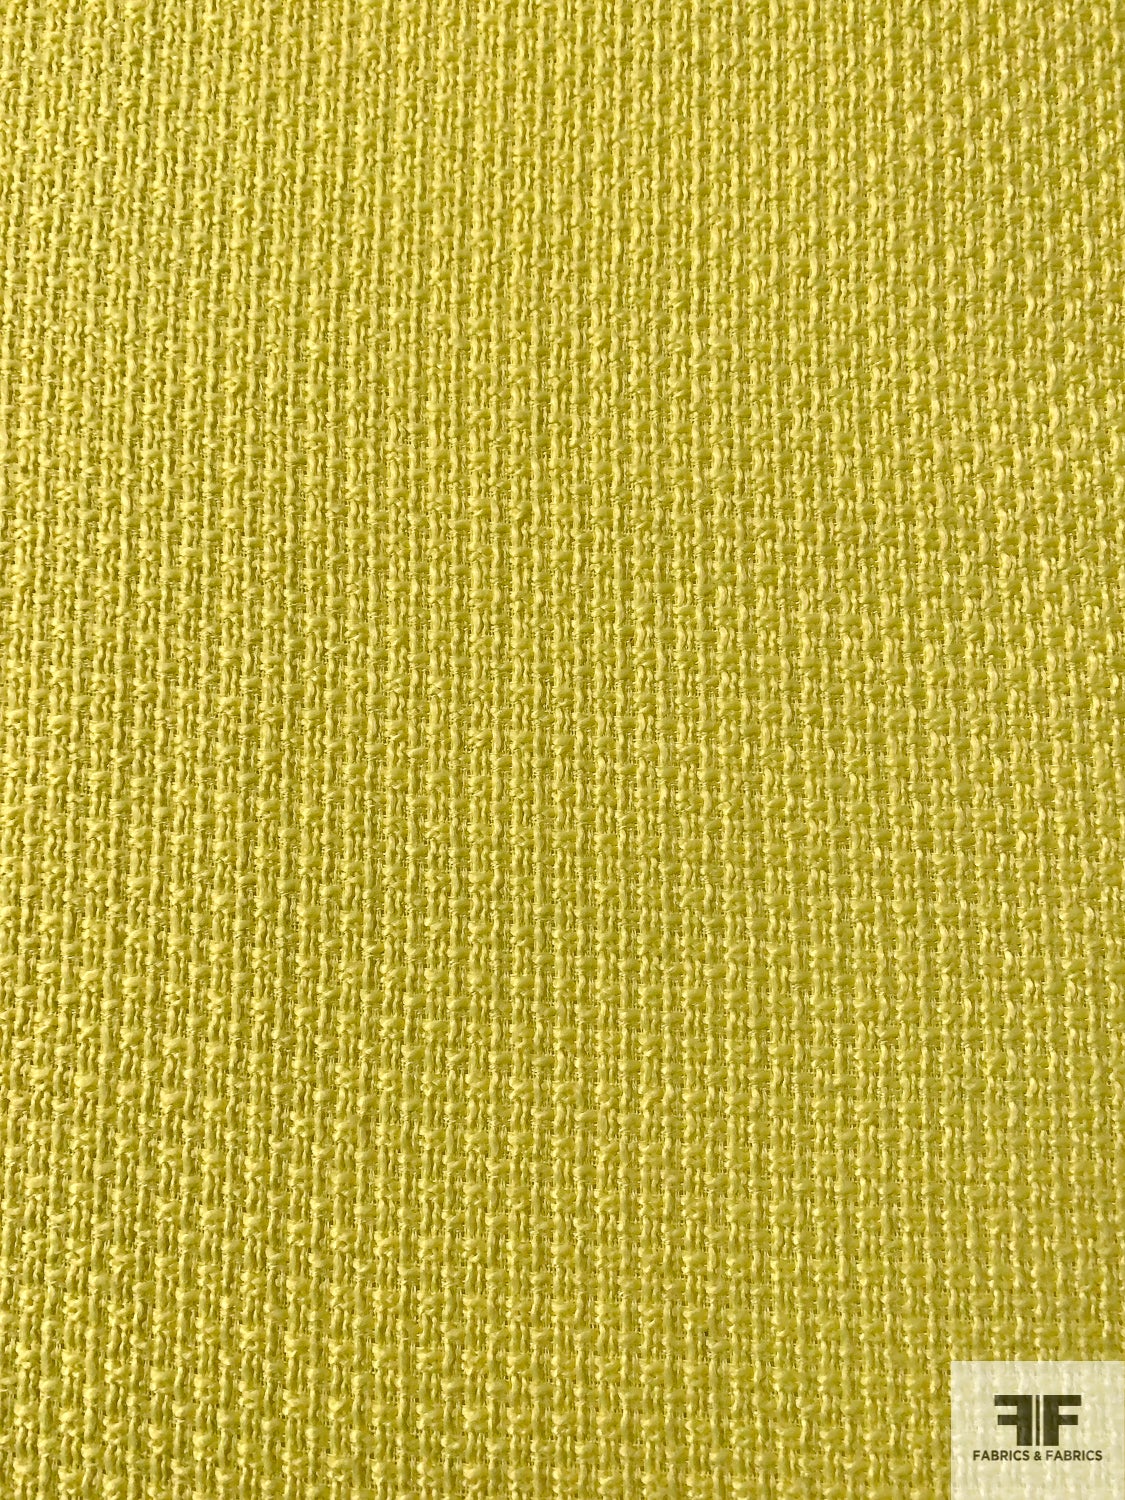 Italian Basic Basketweave Ladies Tweed Suiting - Summer Yellow